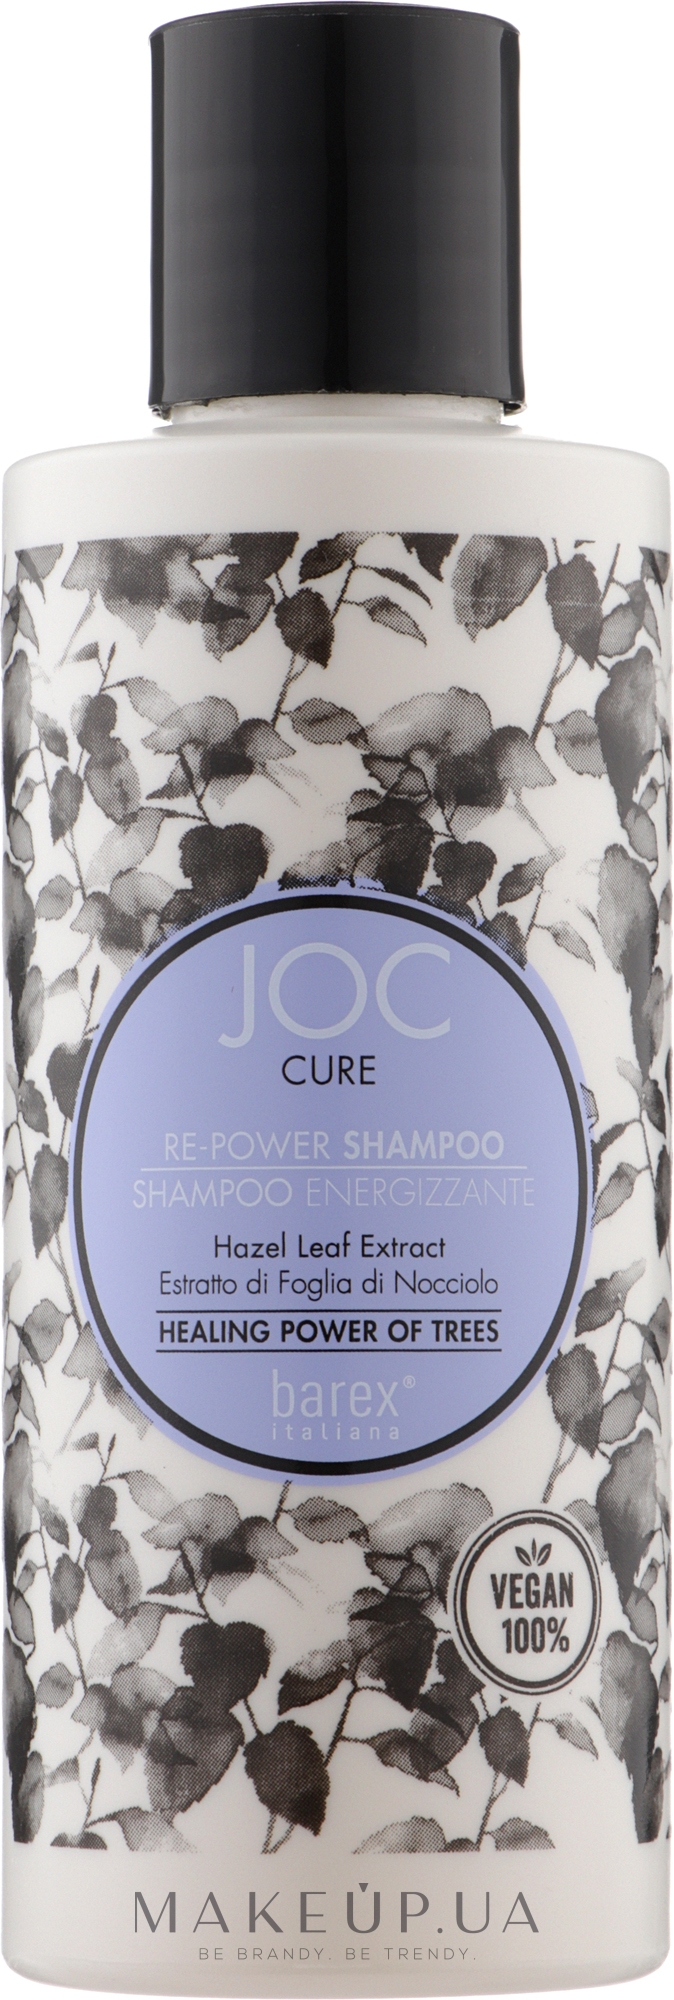 Шампунь против выпадения волос - Barex Italuana Joc Cure Re-Power Shampoo — фото 250ml